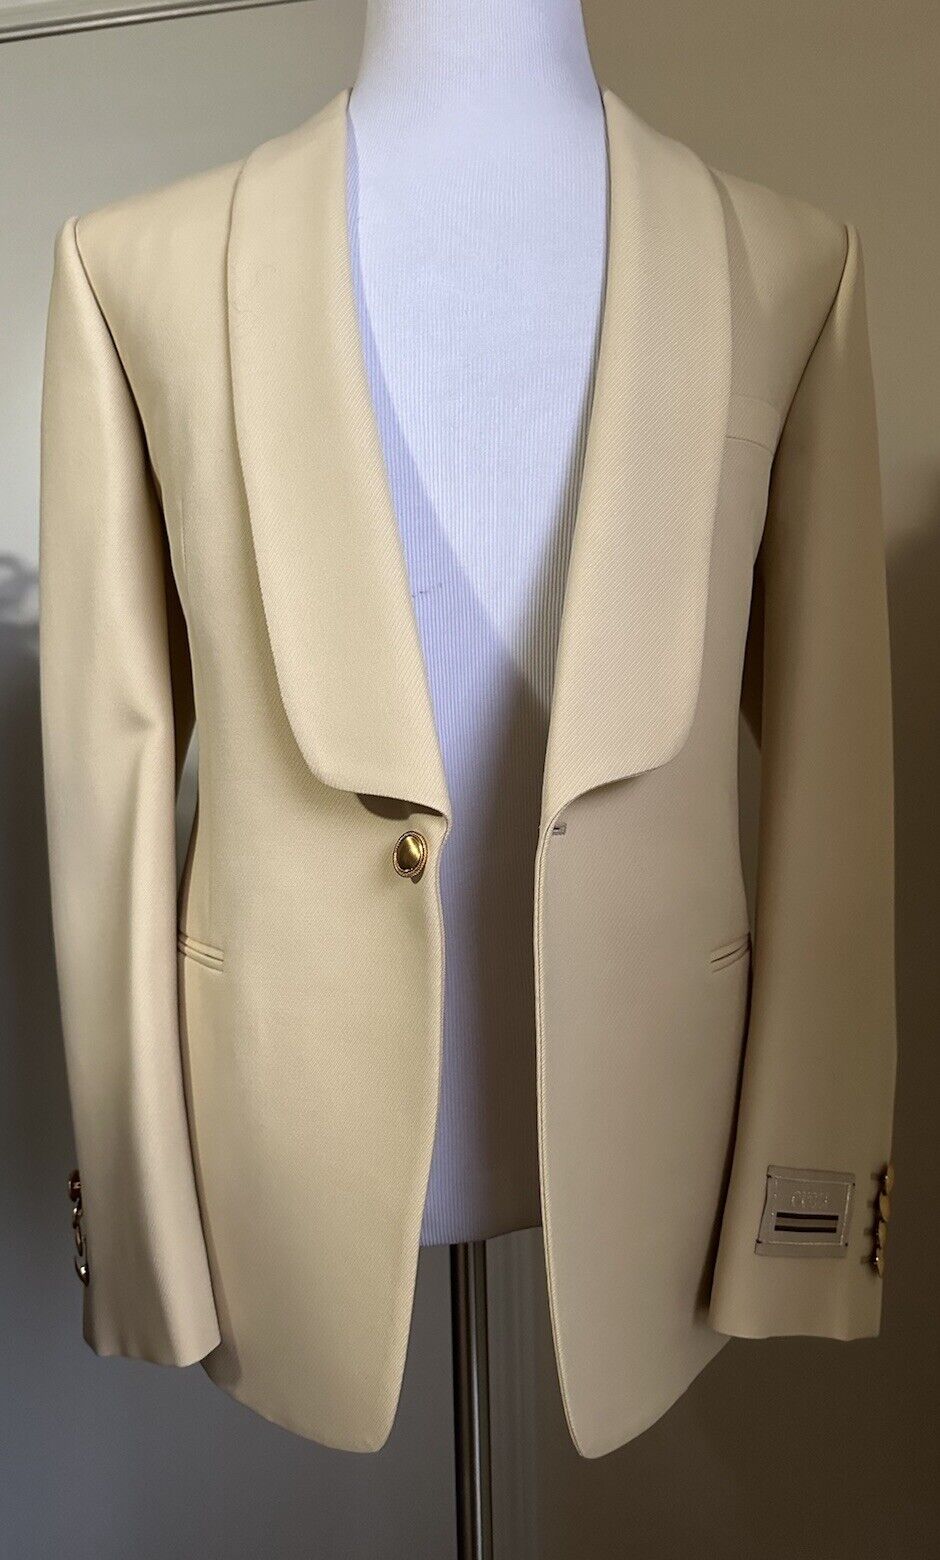 Gucci Men Sport Coat Blazer Color Cornsilk 40R US/50R Eu New $2600